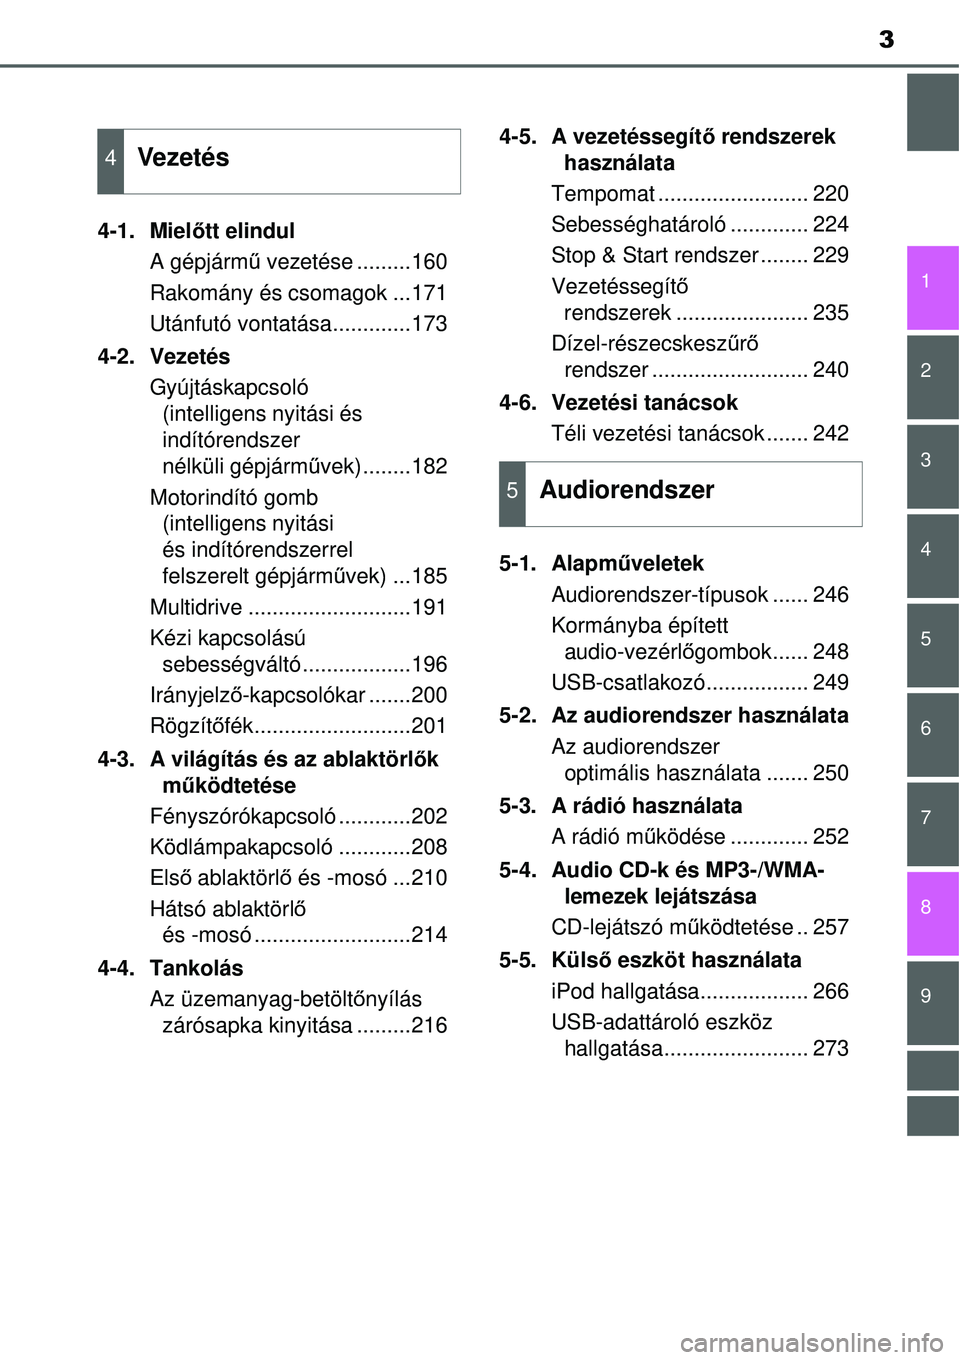 TOYOTA YARIS HATCHBACK 2014  Kezelési útmutató (in Hungarian) 3
1
7
8 6 5
4
3
2
9
4-1. Mielőtt elindul
A gépjármű vezetése .........160
Rakomány és csomagok ...171
Utánfutó vontatása.............173
4-2. Vezetés
Gyújtáskapcsoló 
(intelligens nyitá